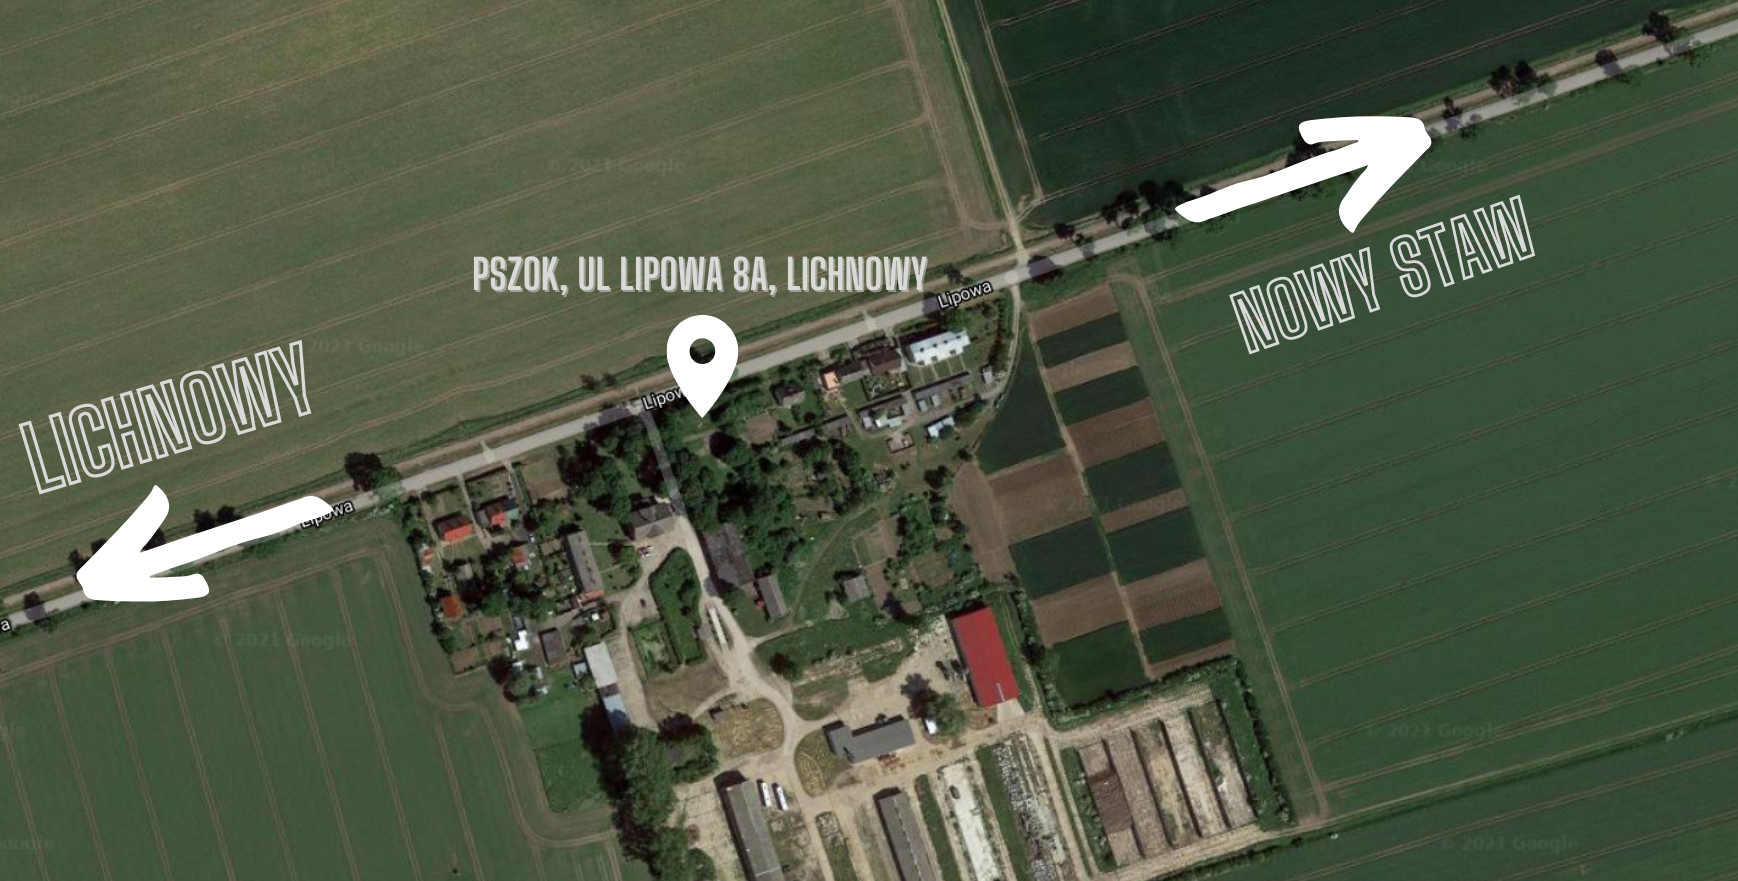 Obrazek przedstawia mapę lokalizacji PSZOK